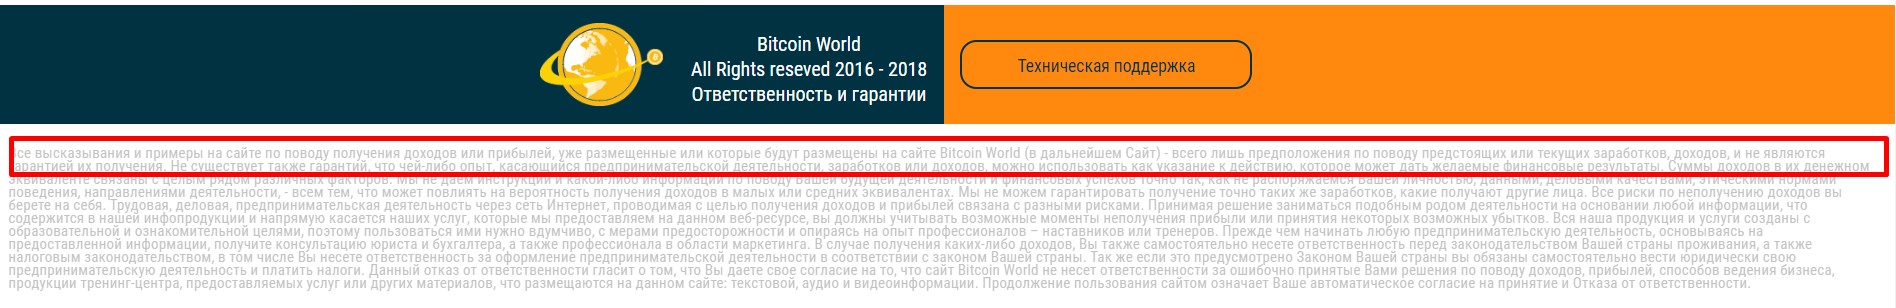 Bitcoin world честные отзывы о проекте!